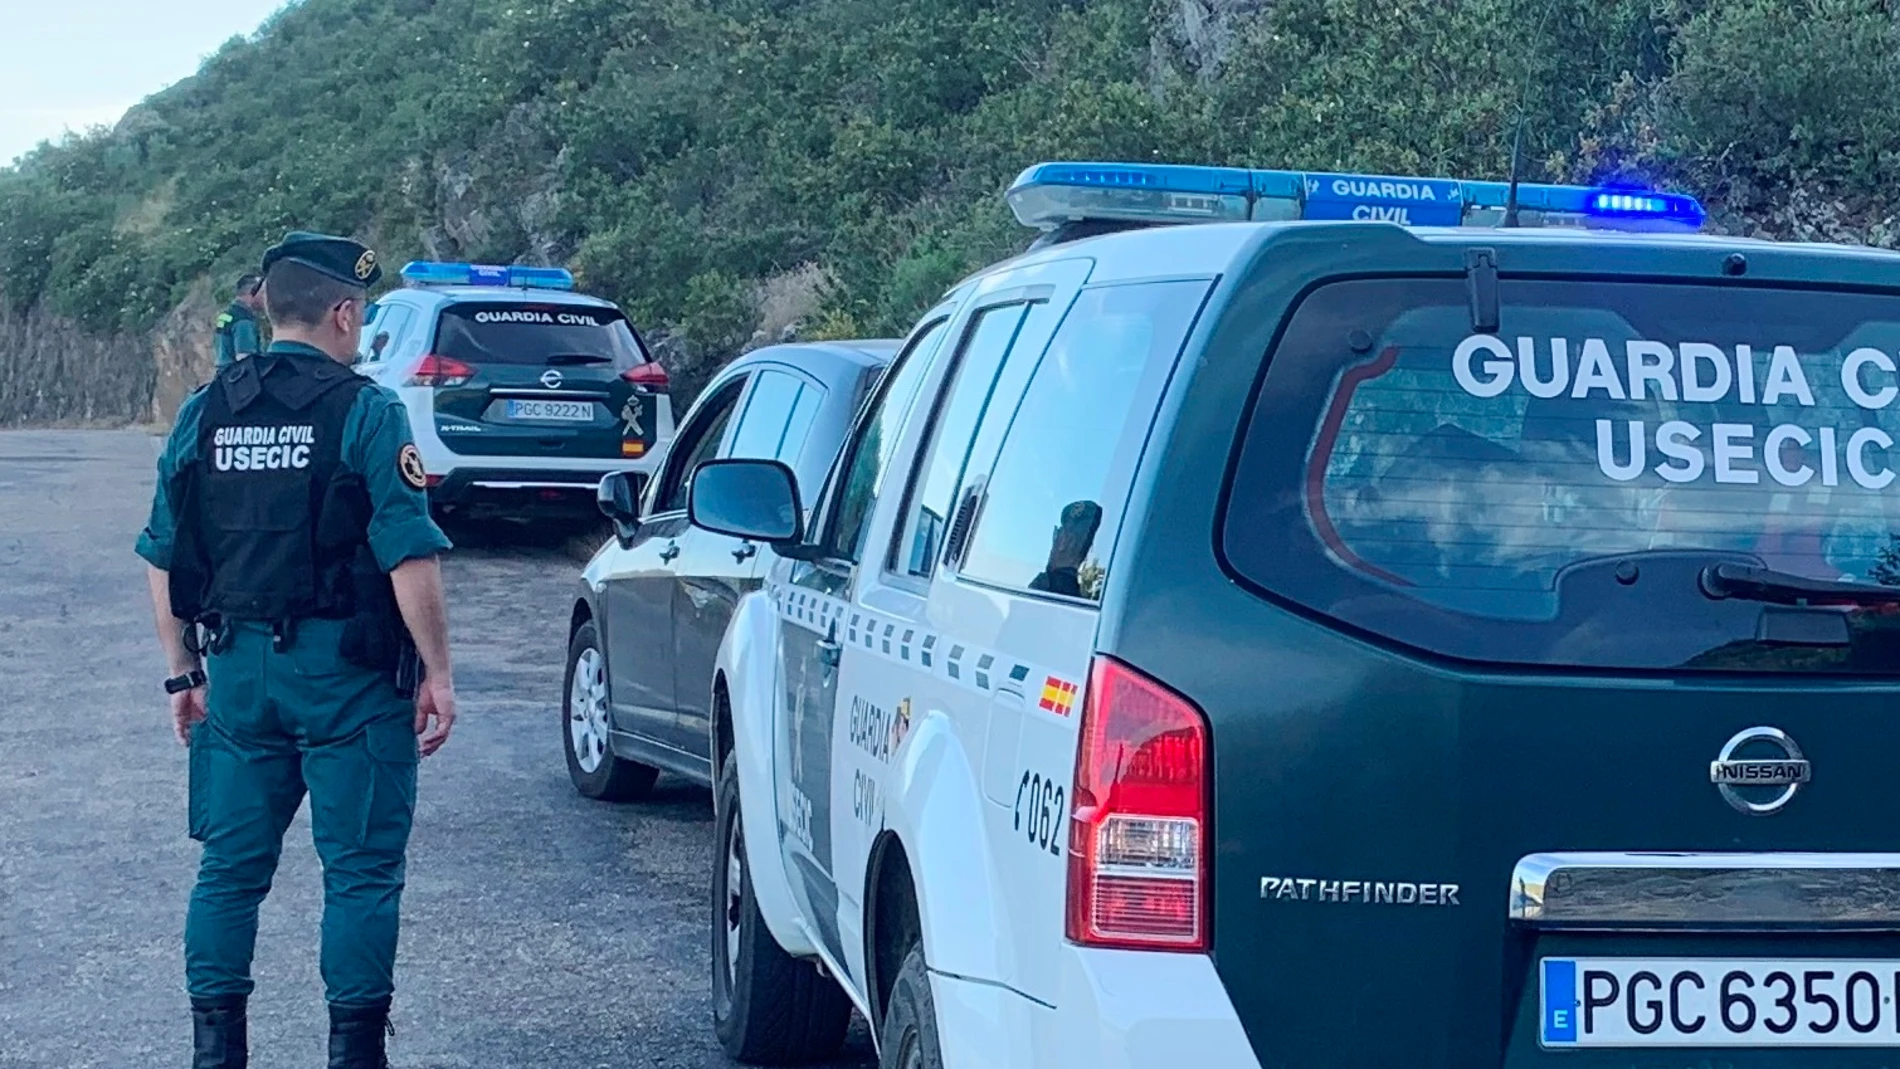 Suc.-Detenido en Zamora tras chocar contra un coche de la Guardia Civil, conducir drogado y saltarse el estado de alarma